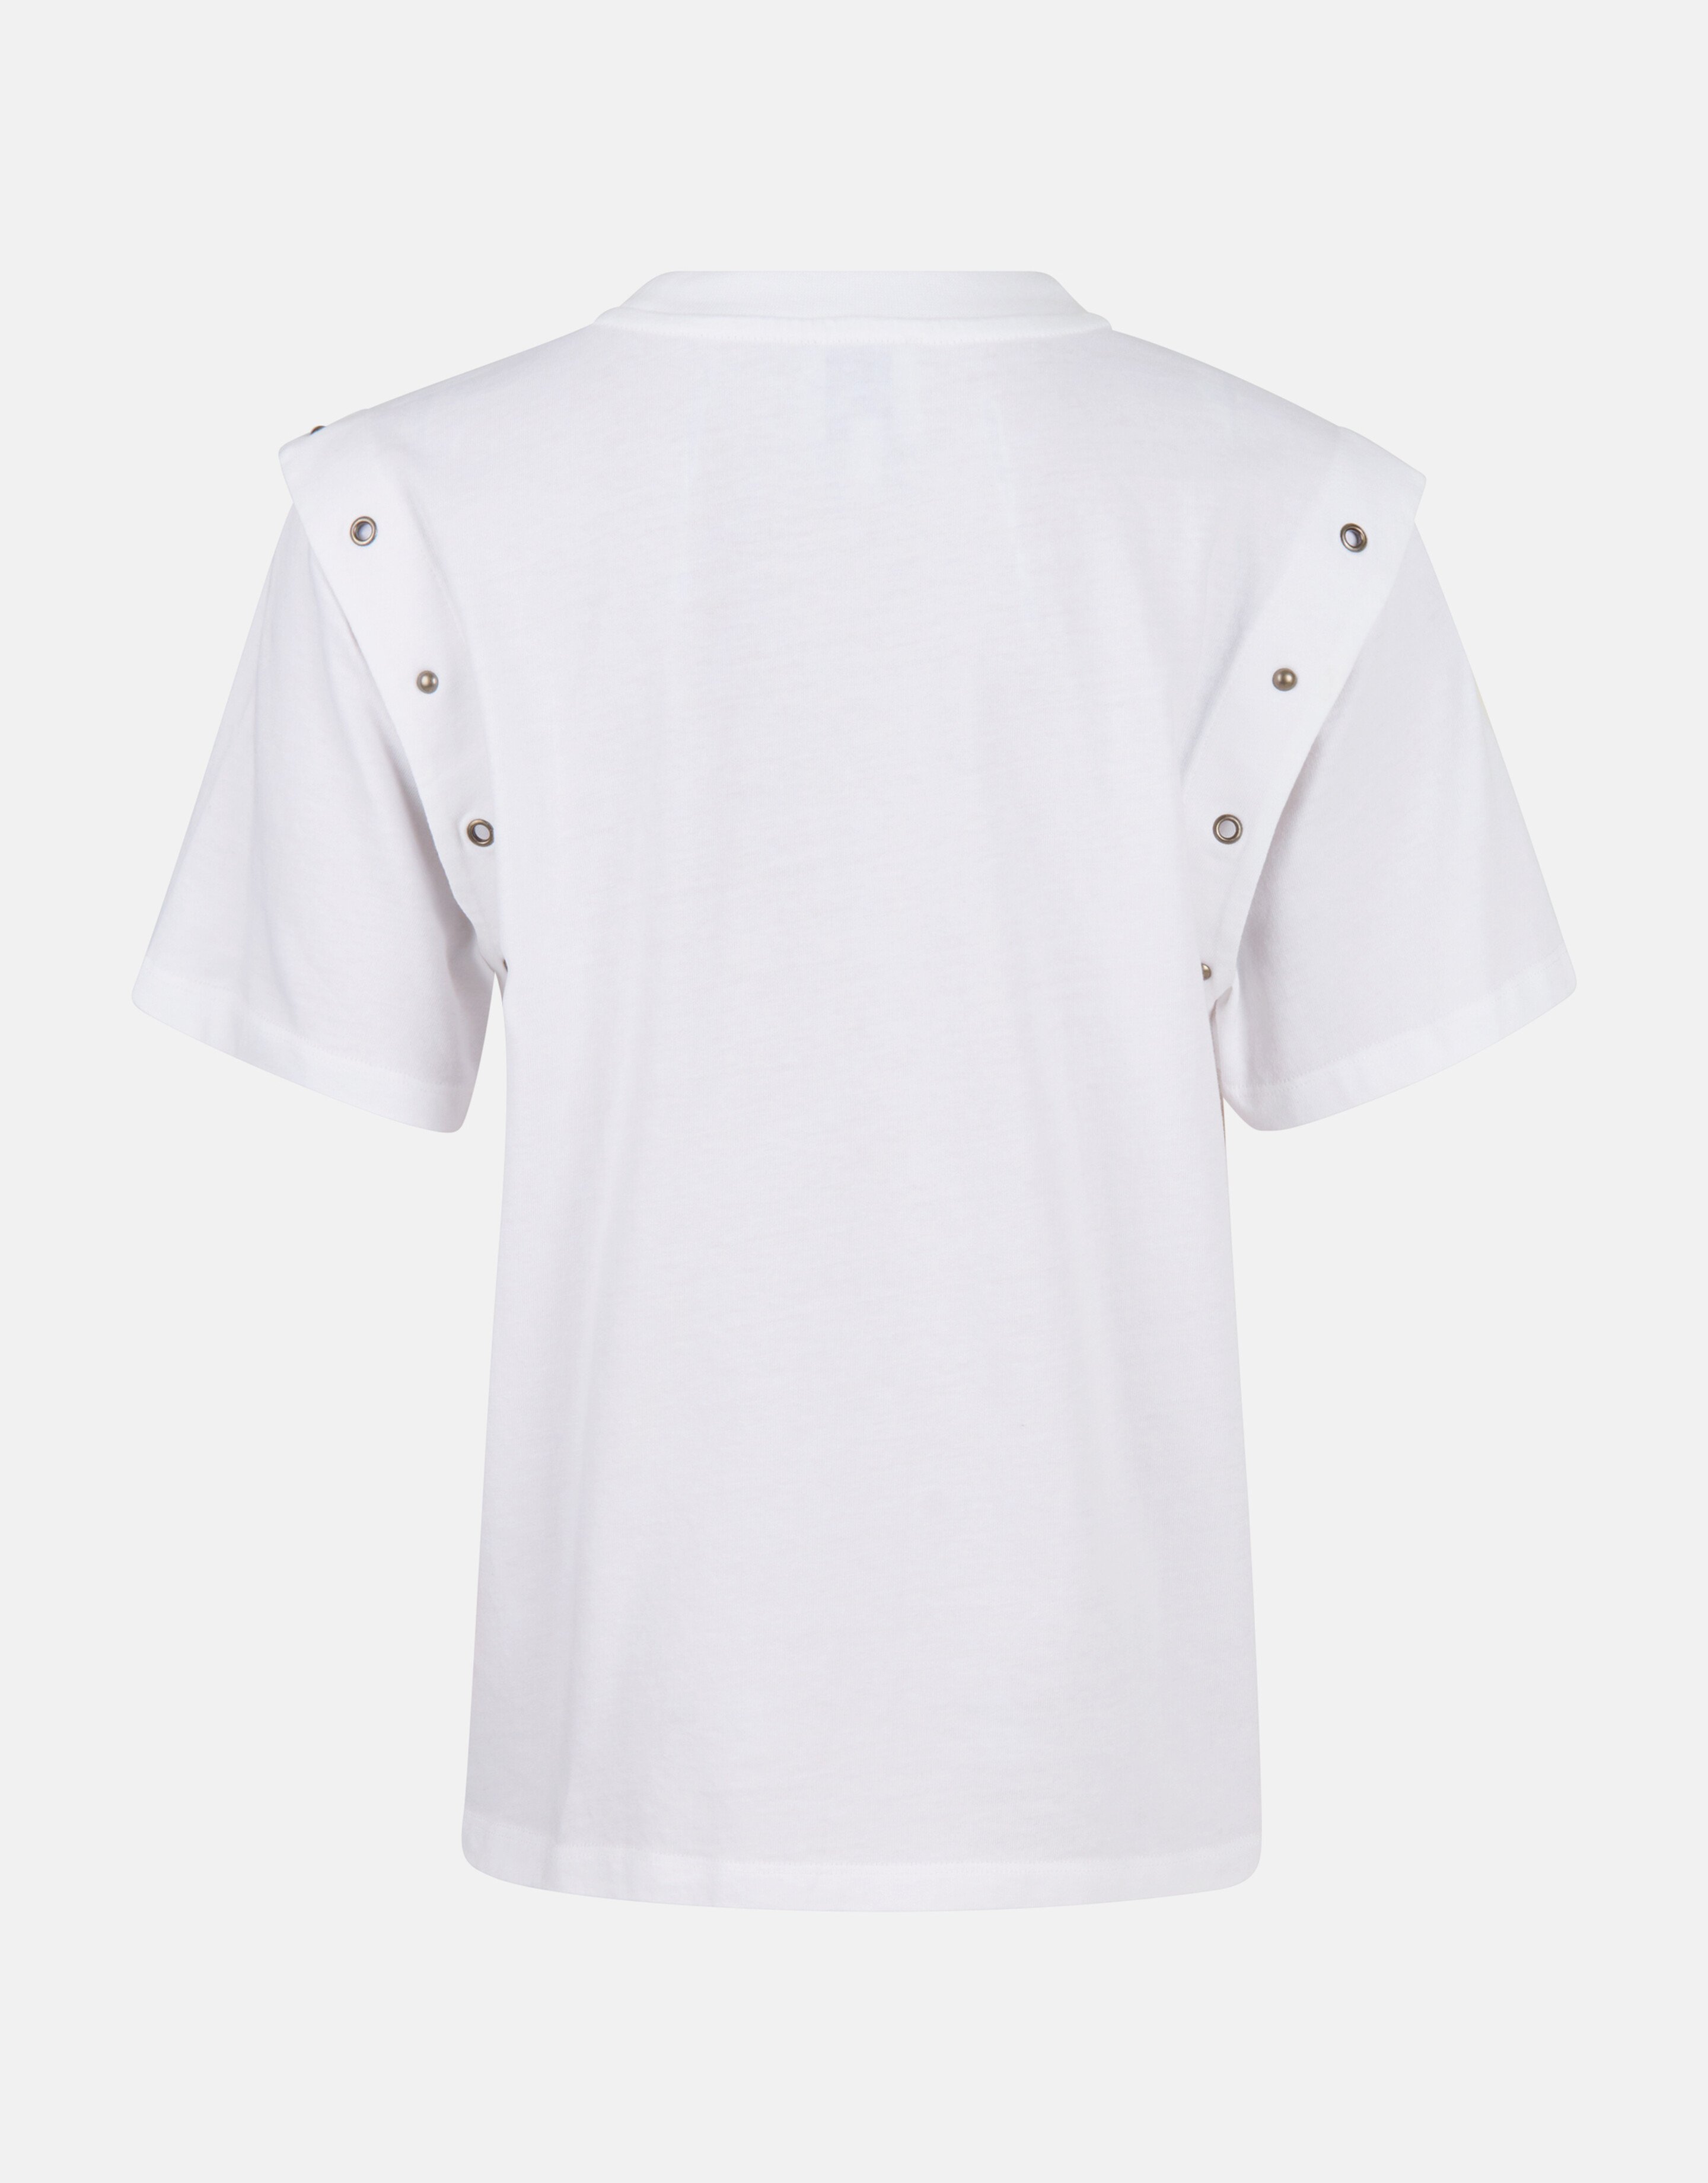 Ösen-T-Shirt Weiß von Nicolette SHOEBY GIRLS